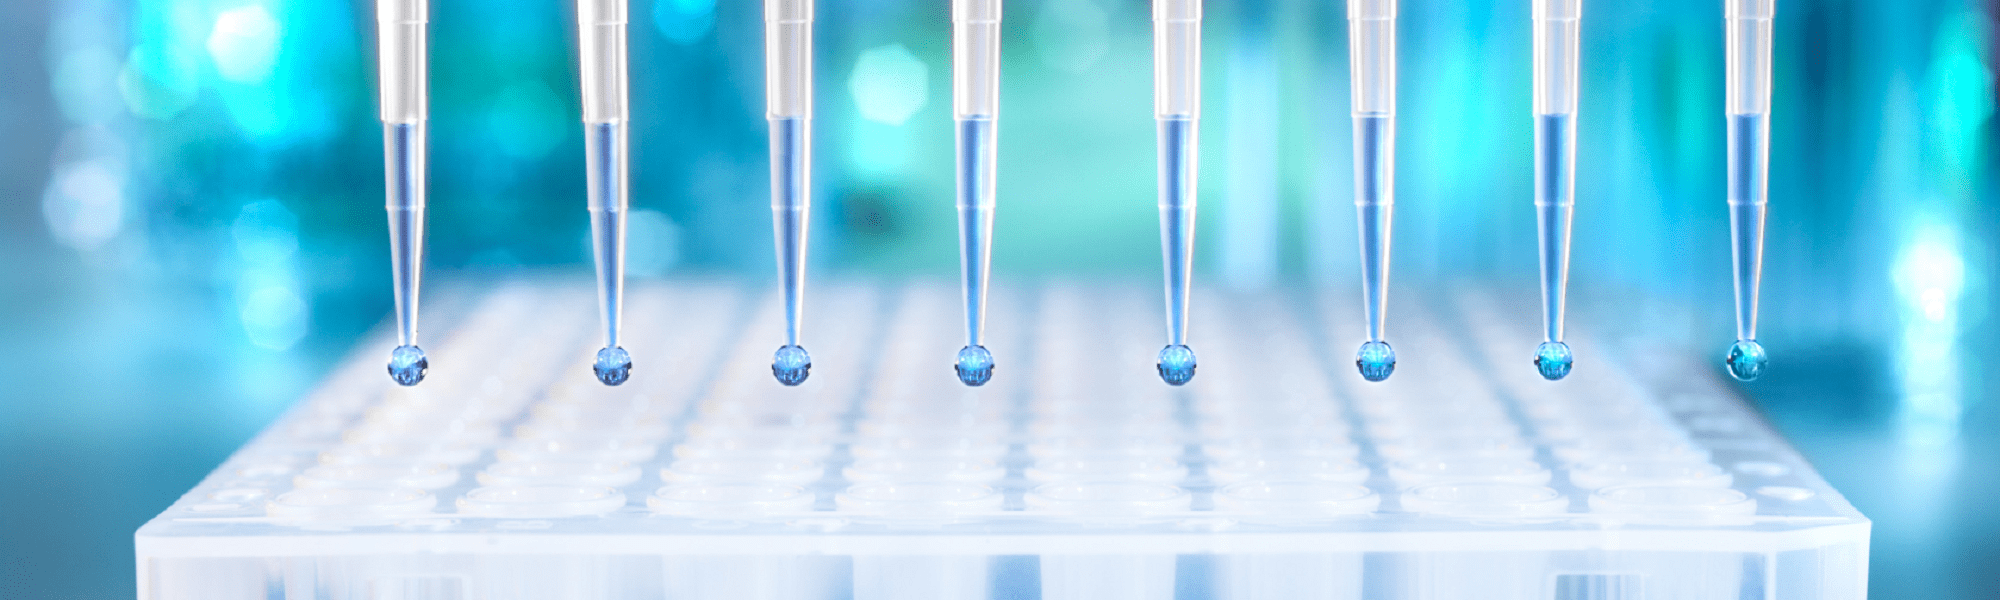 Liquid handling solutions for in vitro diagnostics